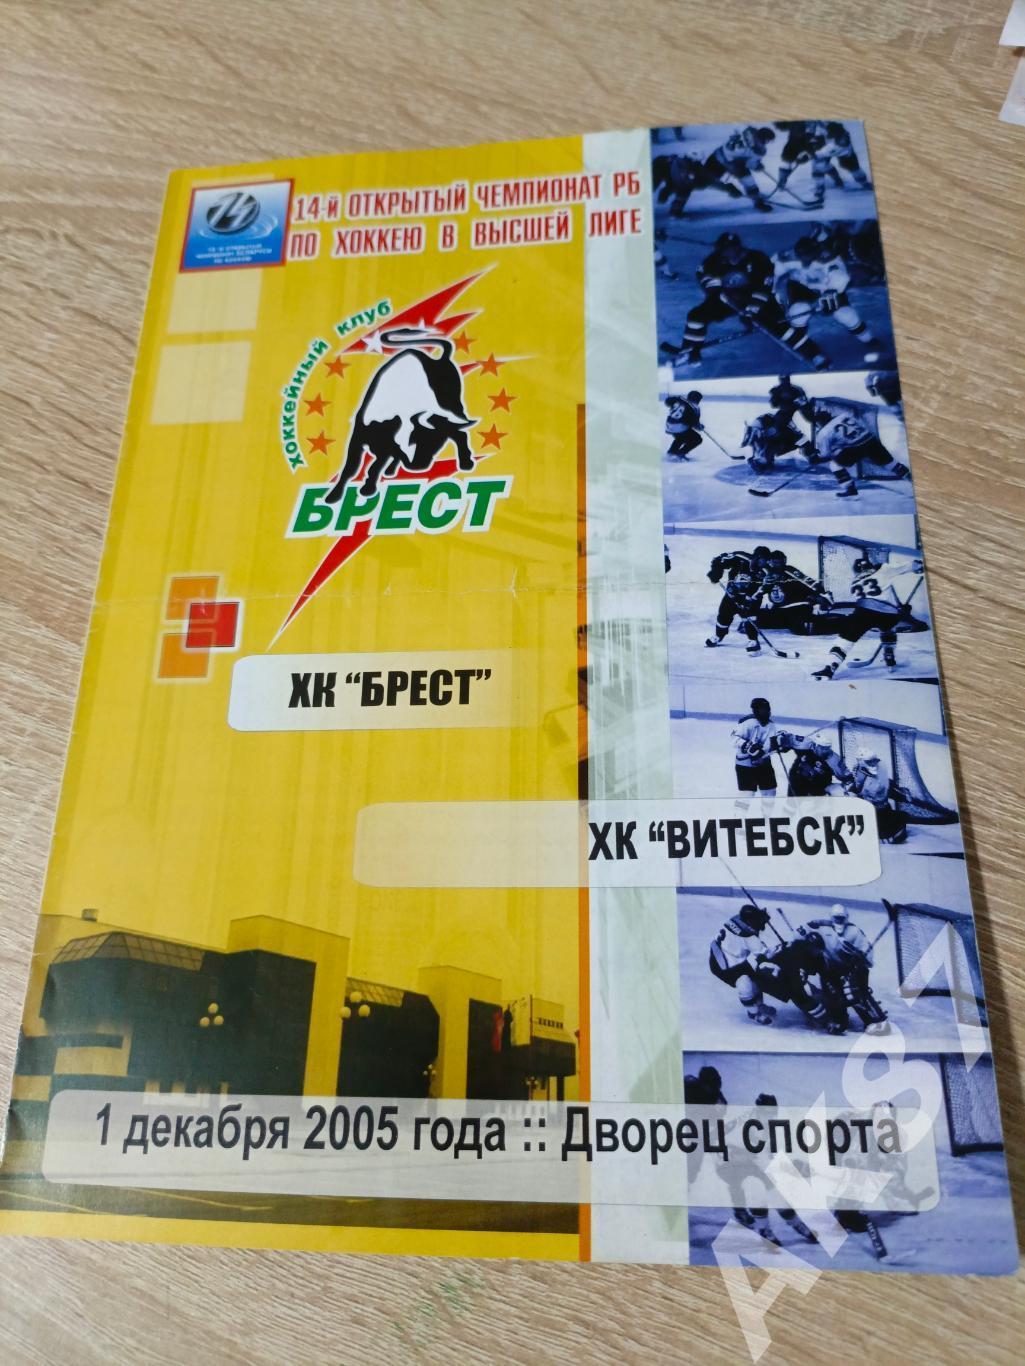 Брест - Витебск 01.12.2005